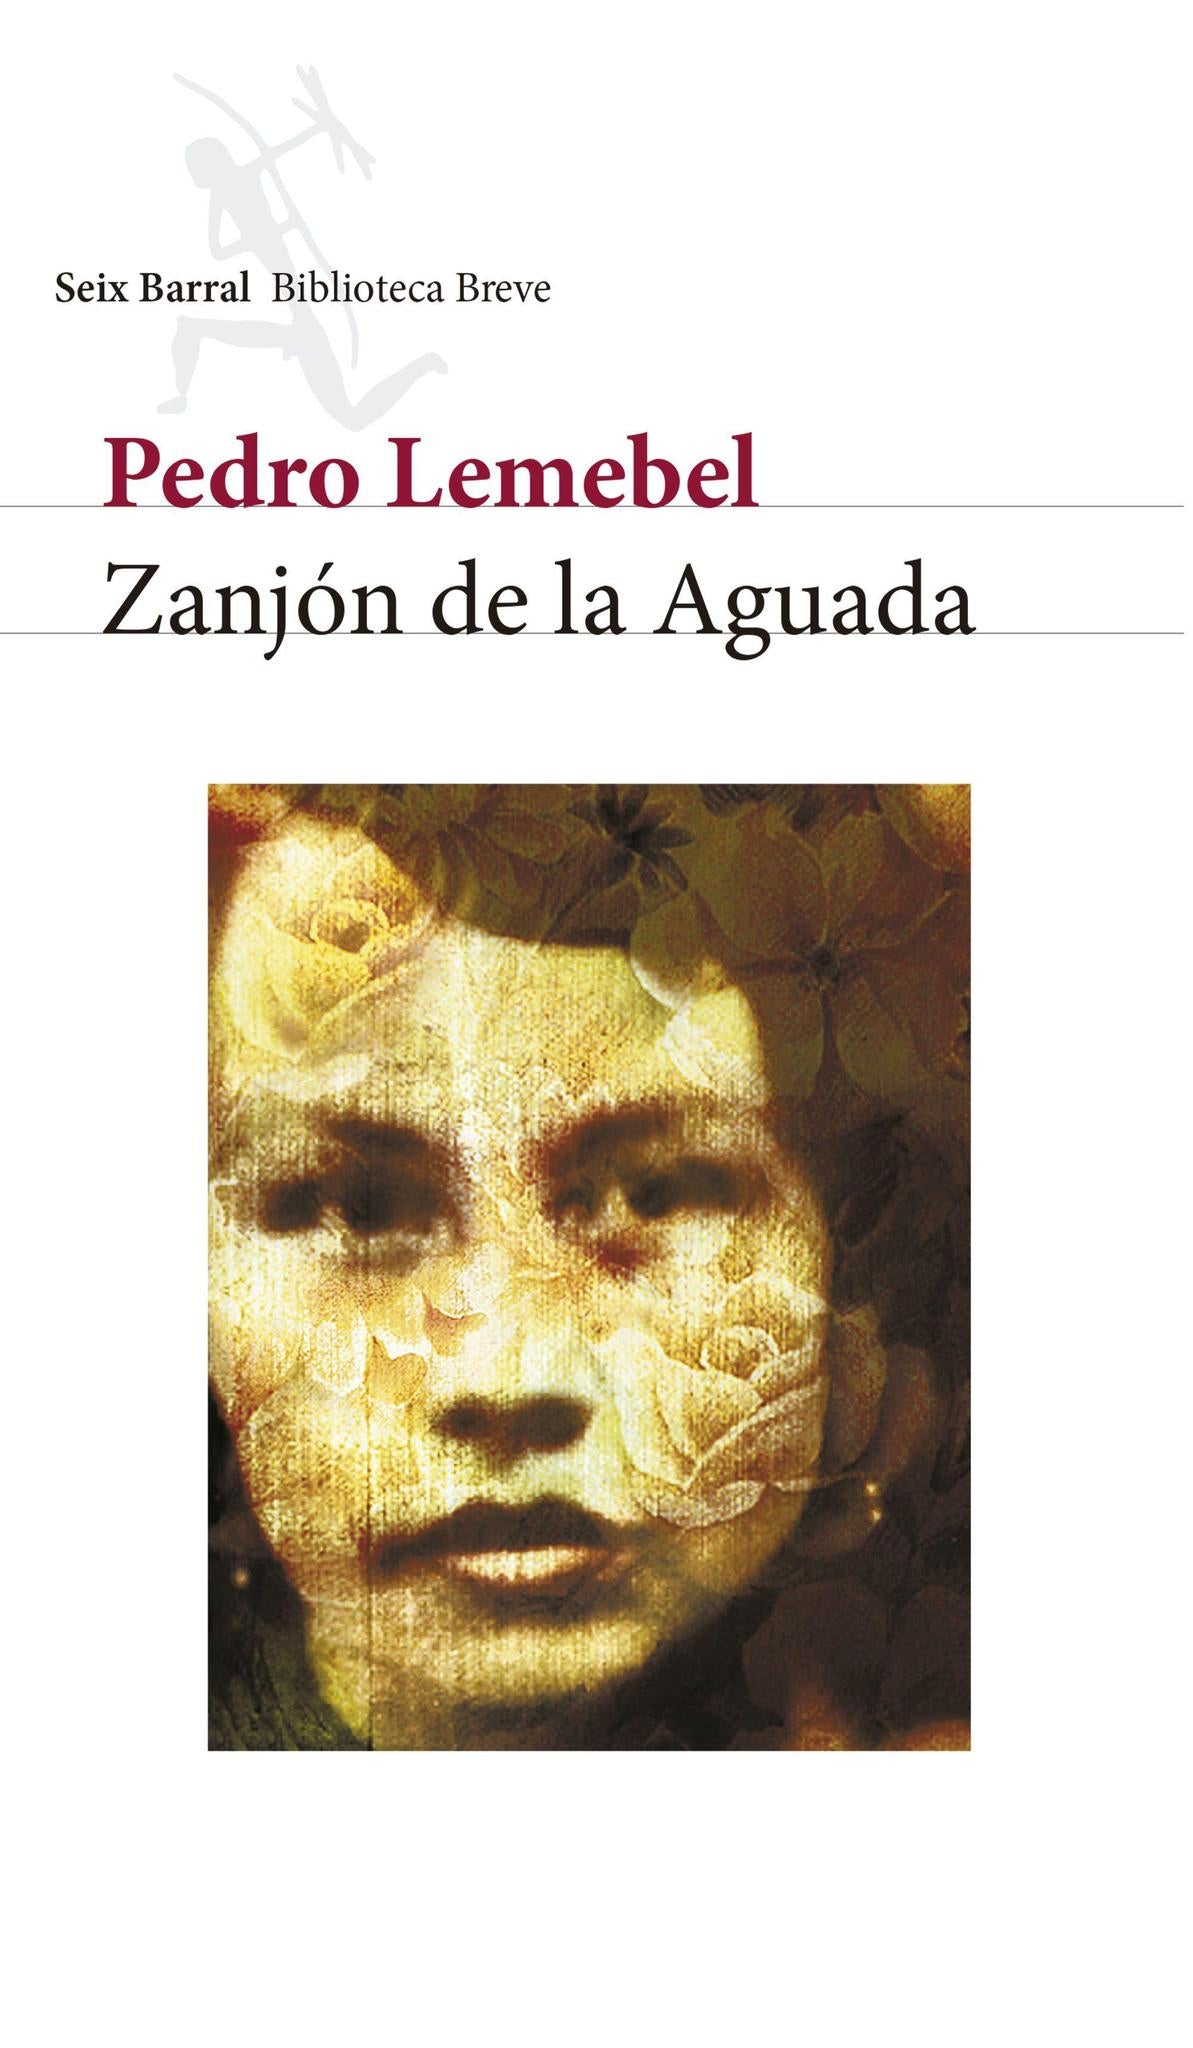 Zanjon de la Aguada - Pedro Lemebel